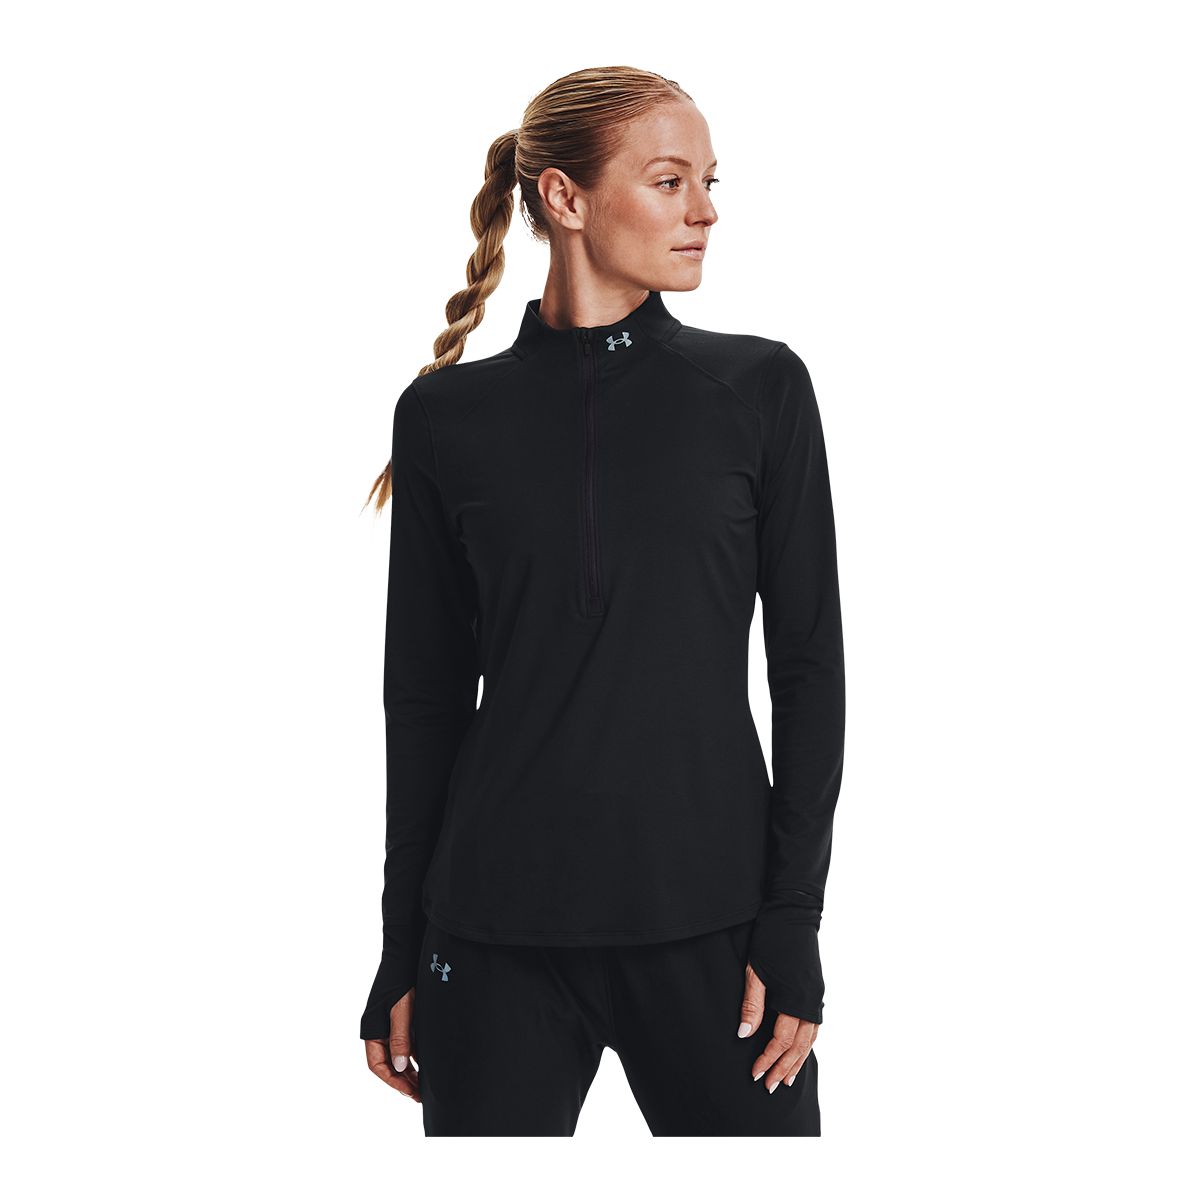 Under Armour Women's Run Qualifier Long Sleeve Half Zip Shirt